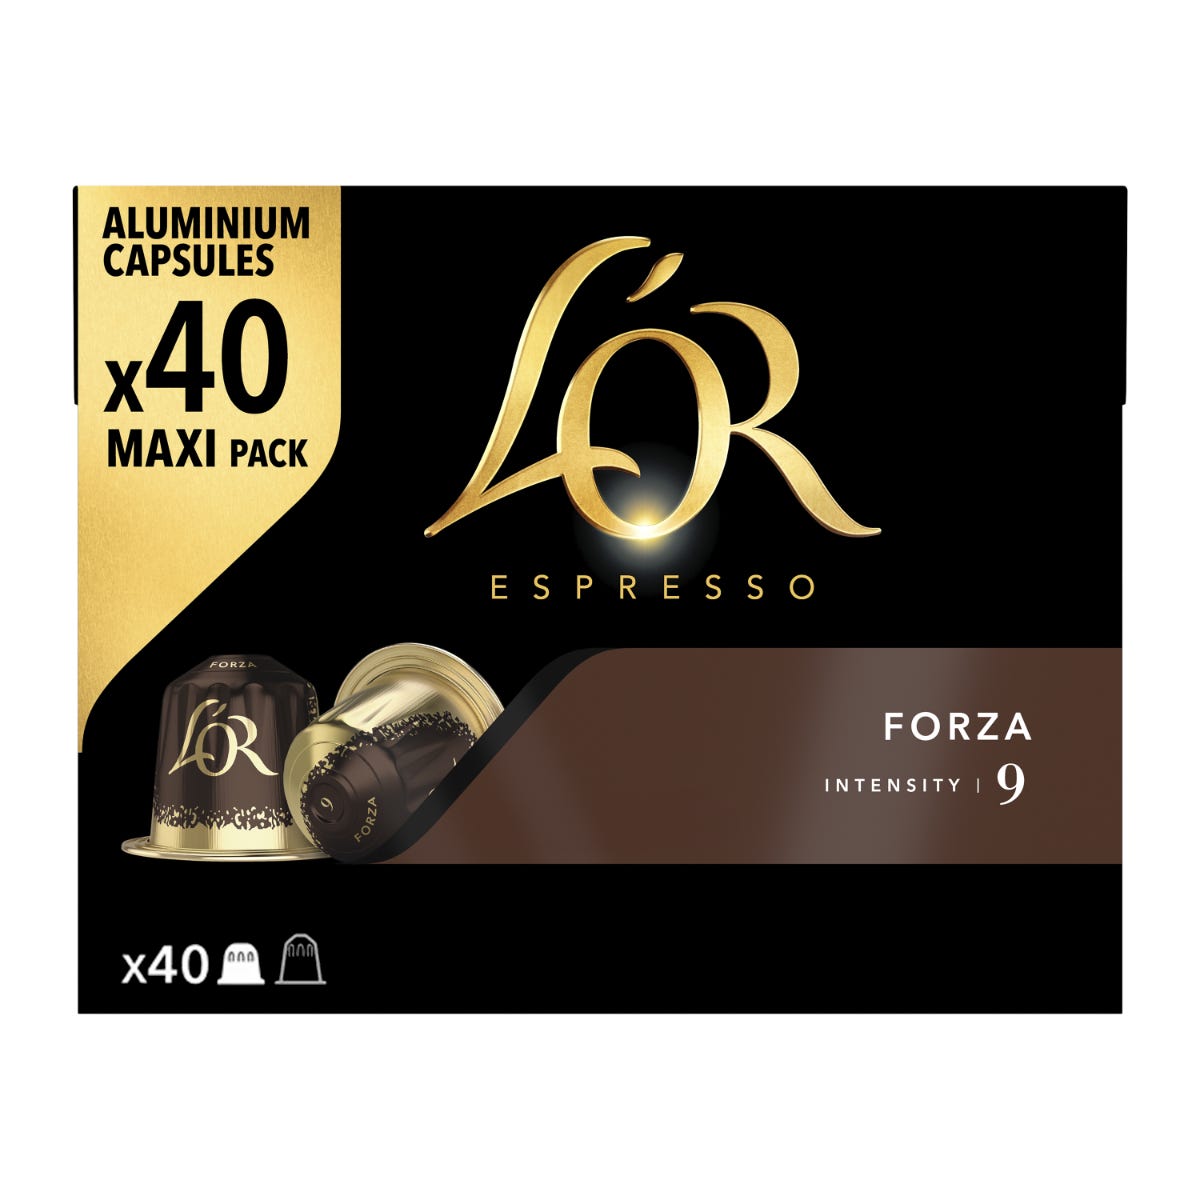 Espresso Forza - X40